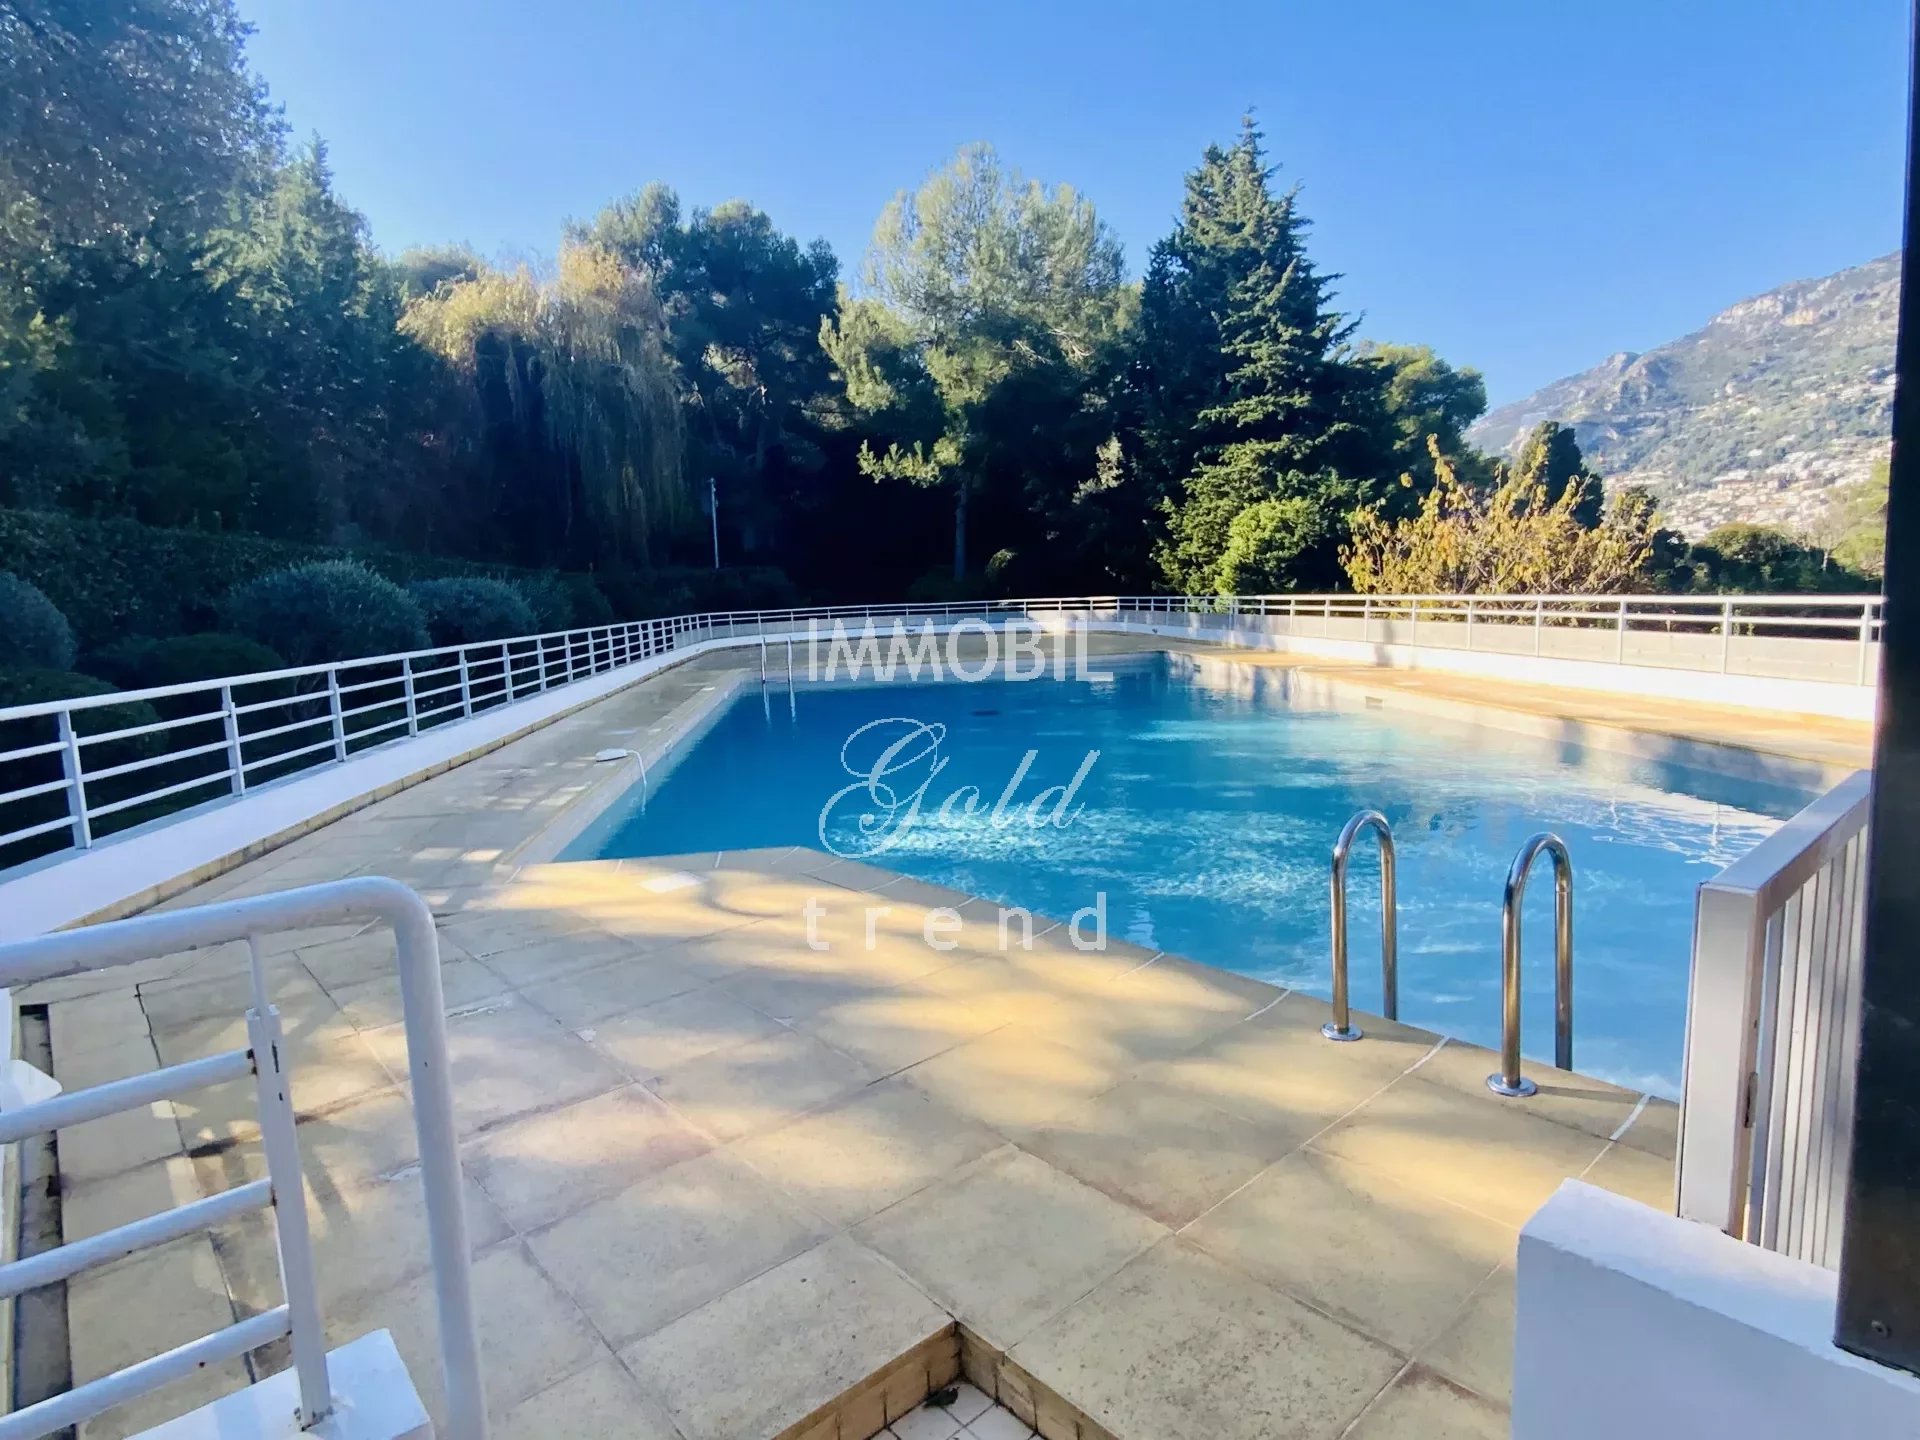 Immobiliare Roquebrune Cap Martin - In vendita, appartamento trilocale con giardino, parcheggio e cantina, in una residenza con piscina